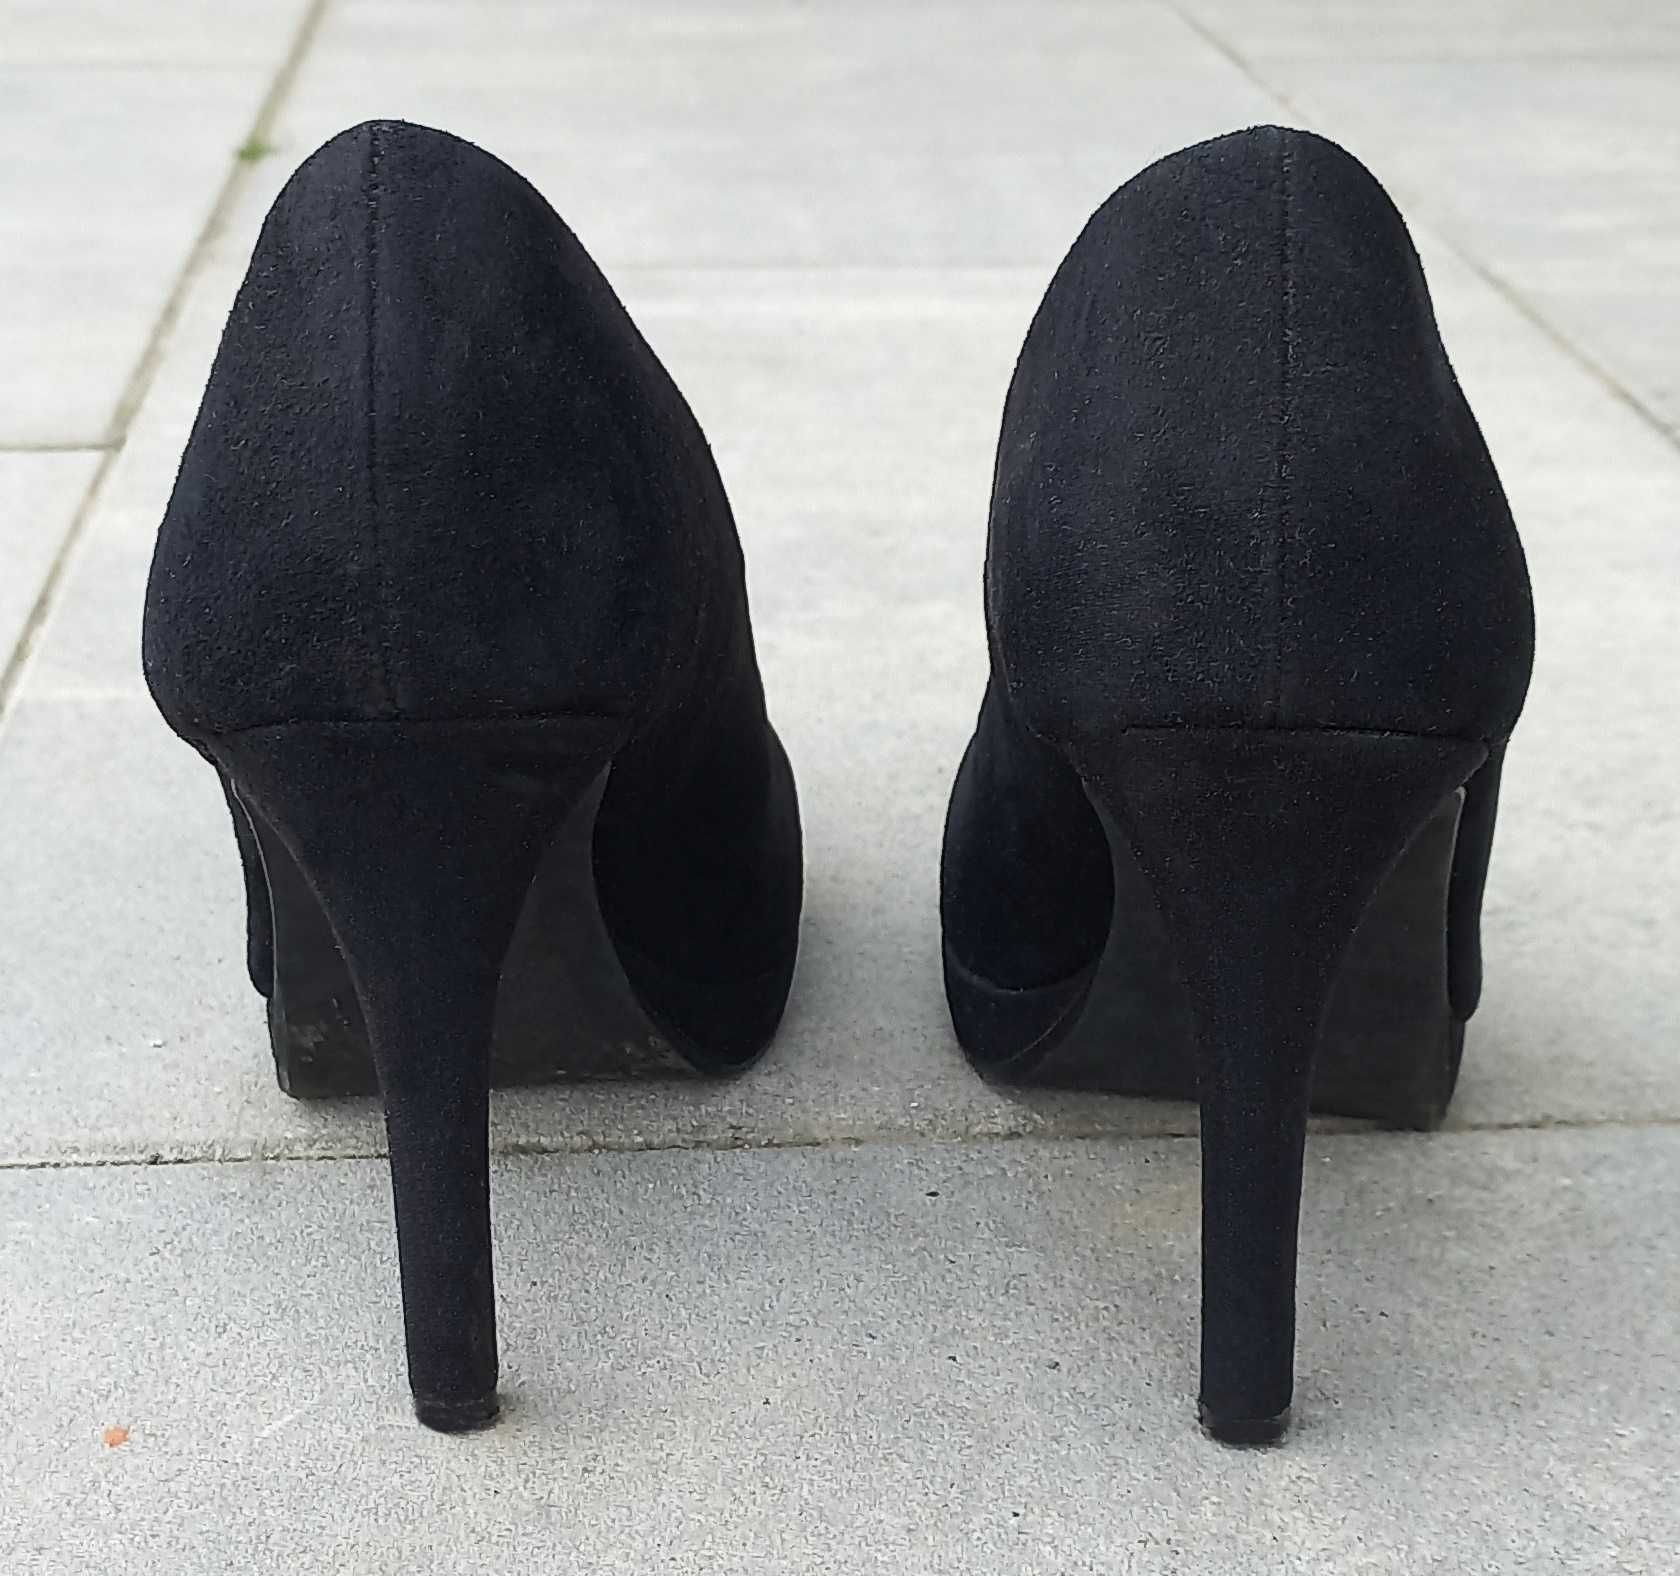 Czarne zamszowe buty na obcasie H&M 38 24,5cm